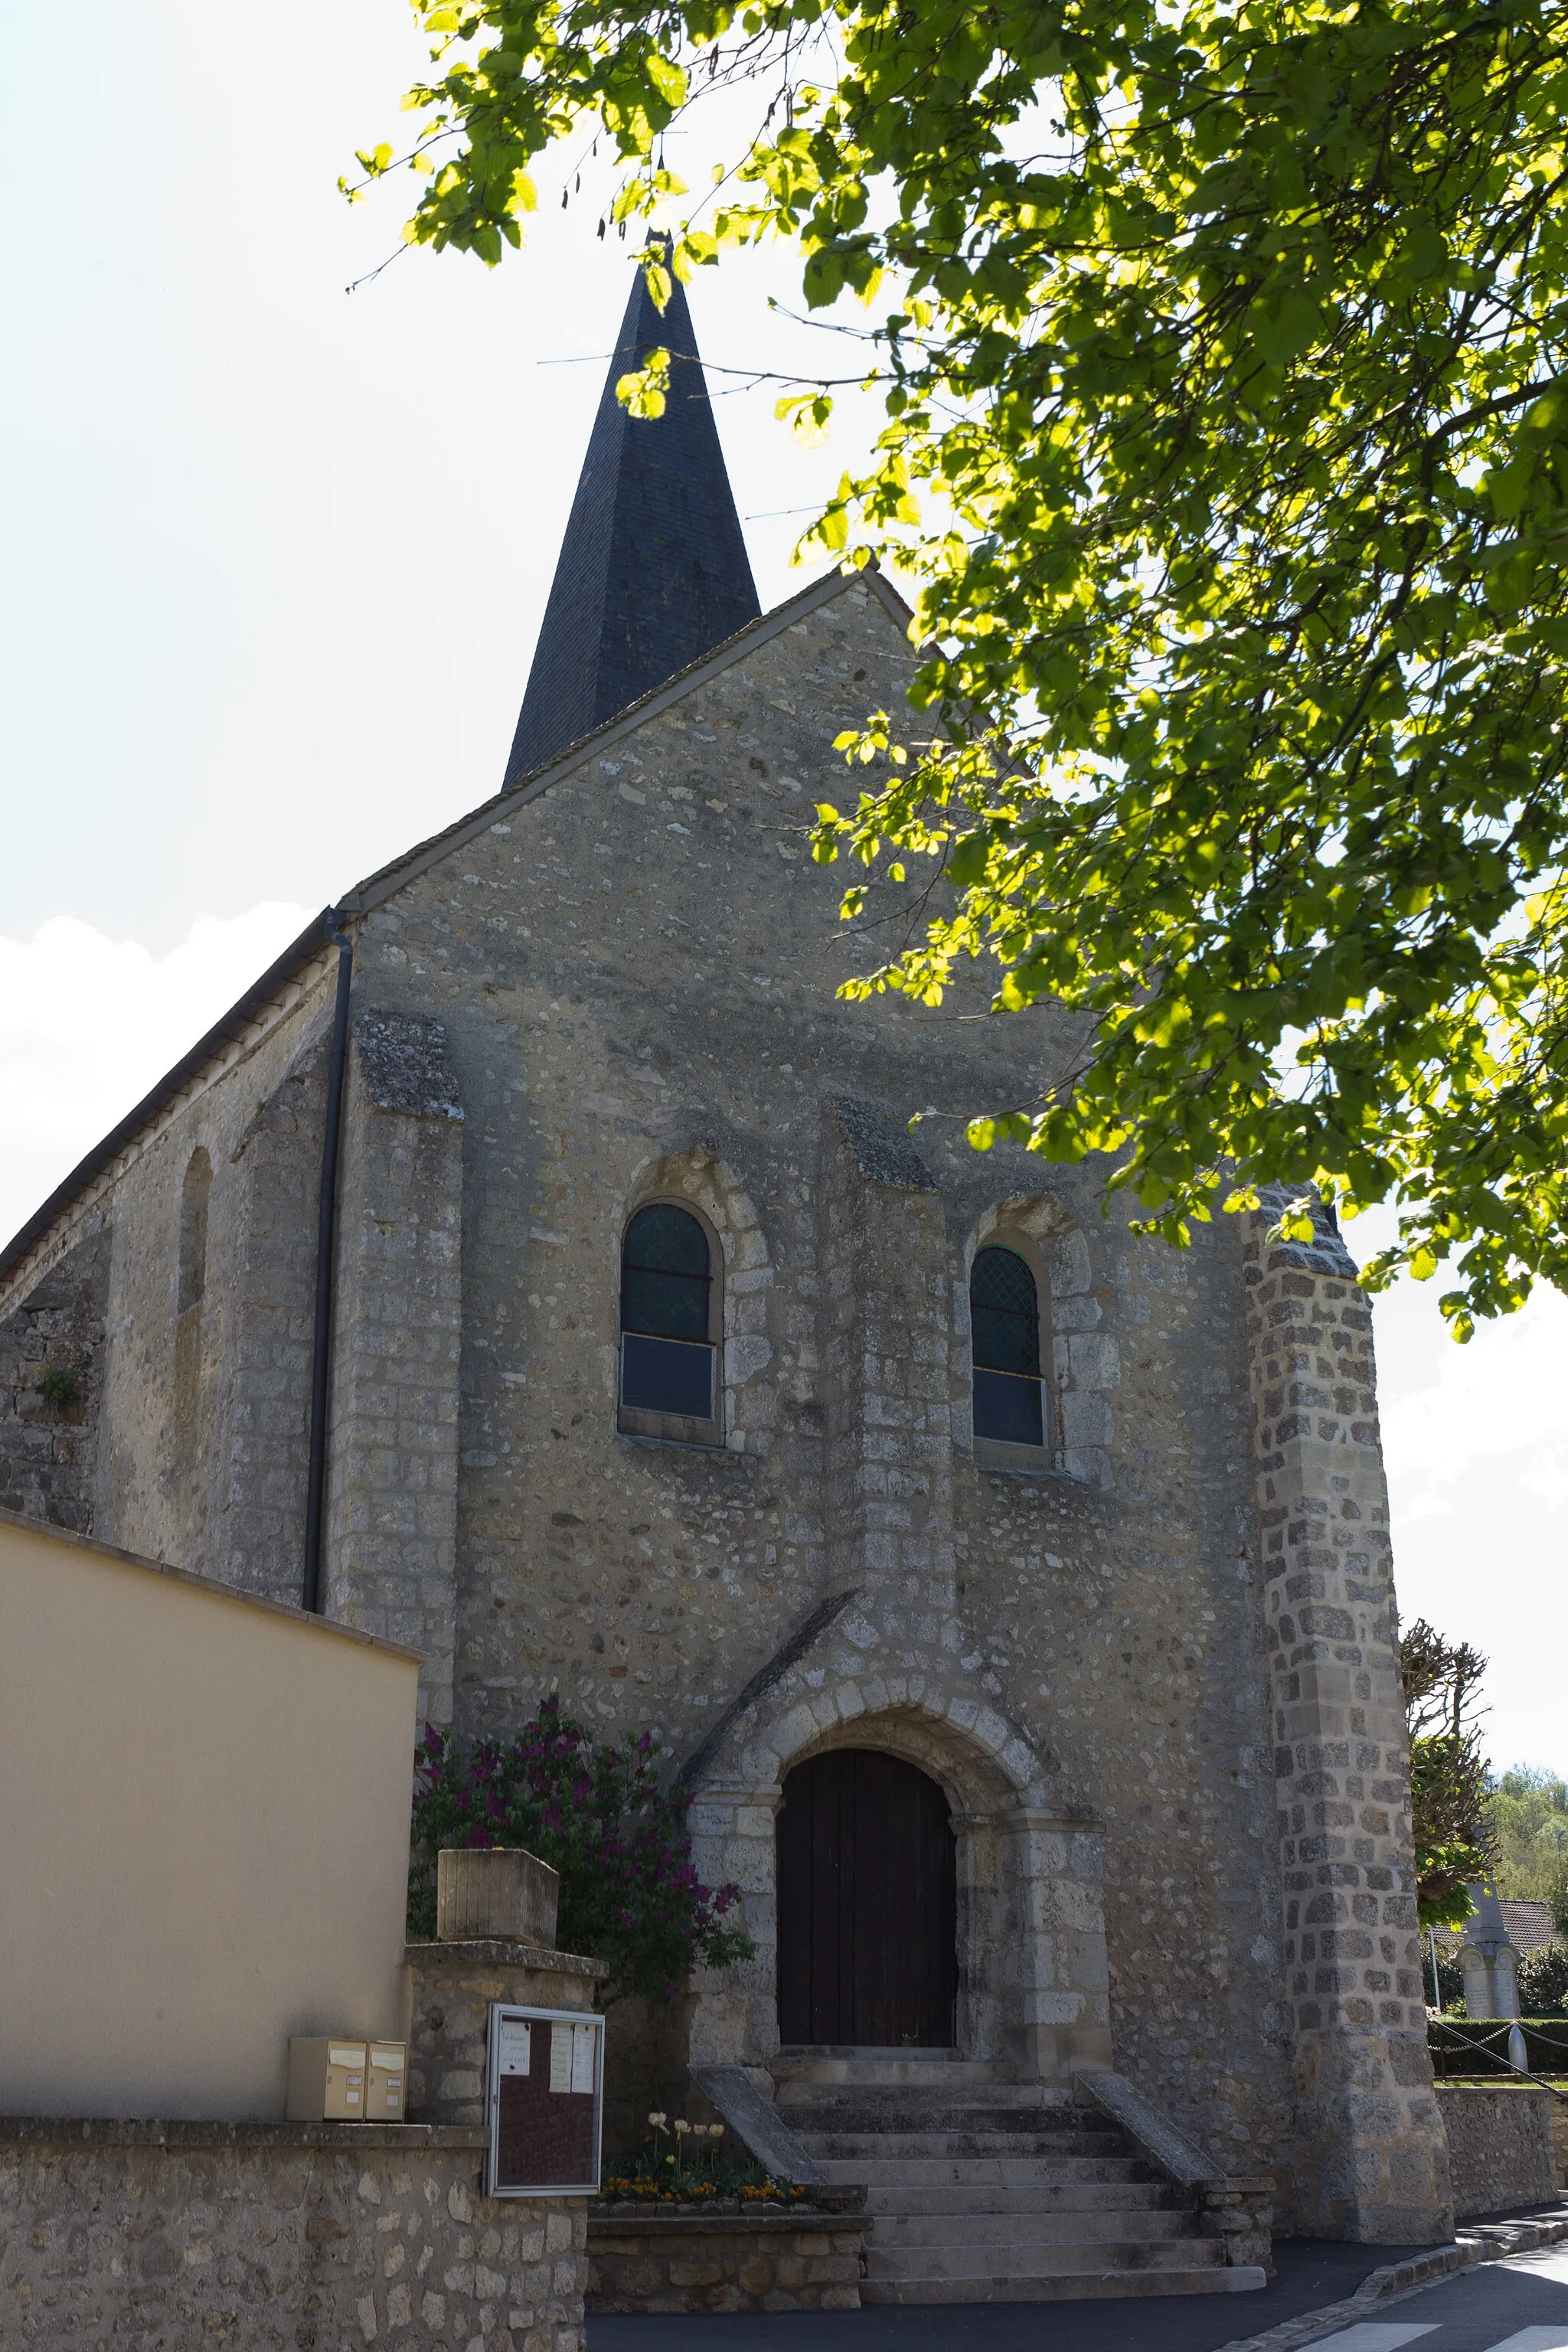 Photo showing: Église de Baulne, Baulne, département de l'Essonne, France